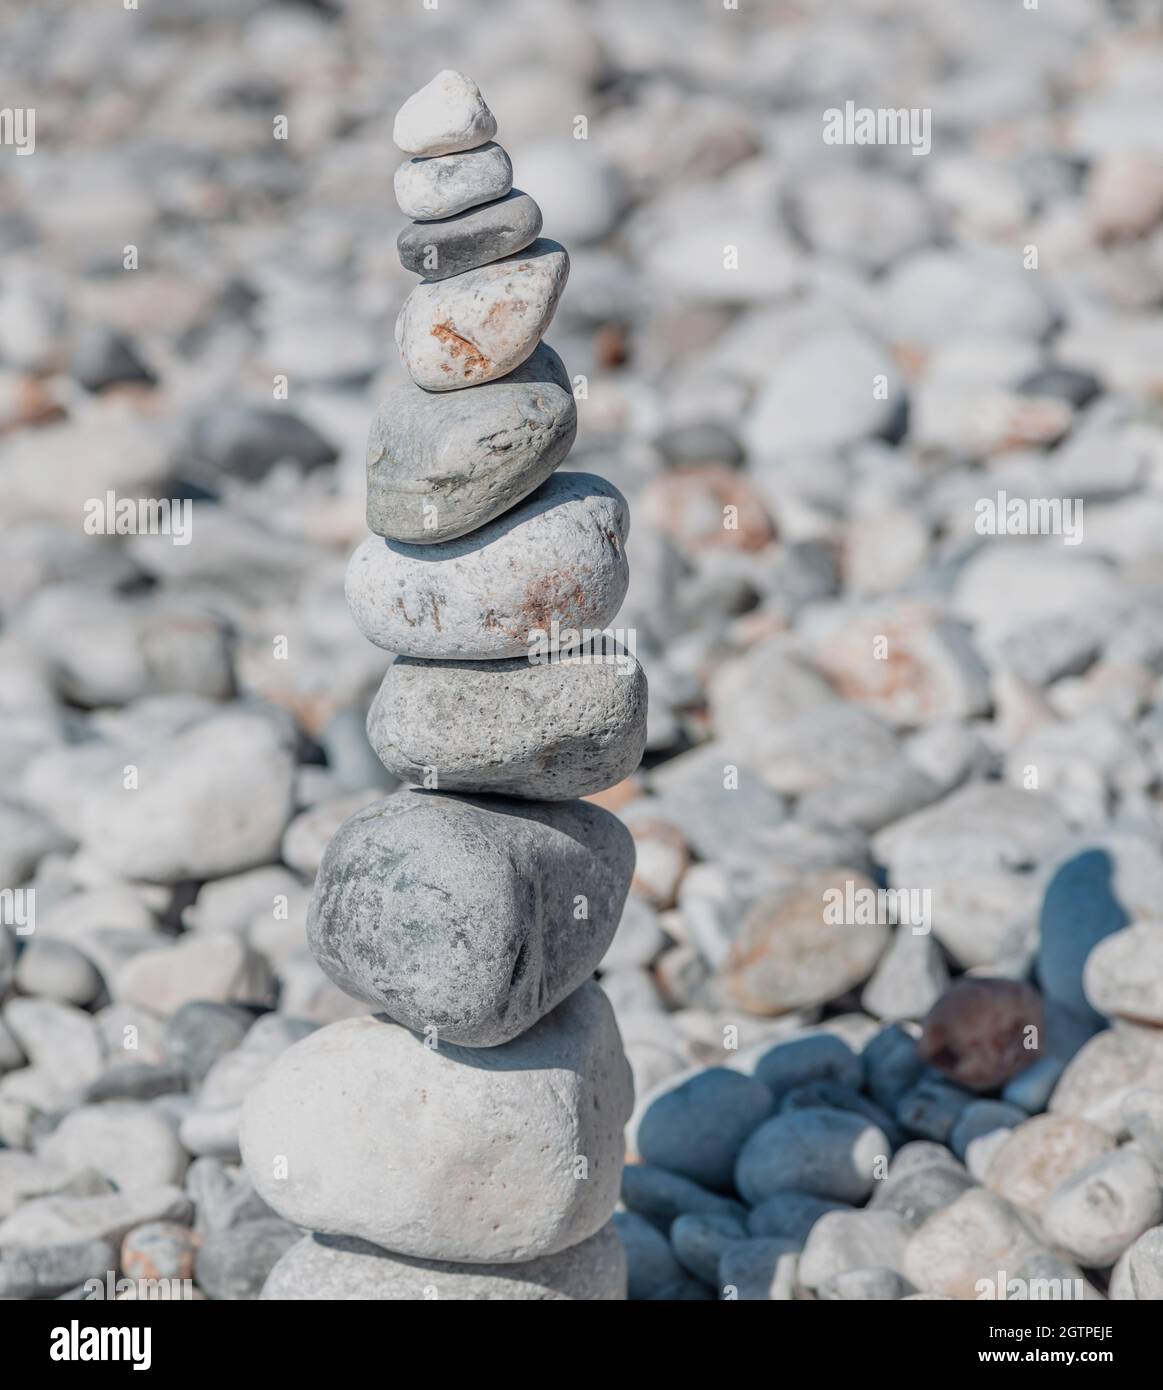 Zen-Steine, glatter Felsturm auf Kiesstrand im Hintergrund, sonniger Tag. Gleichgewicht, Harmonie und Frieden Konzept. Feng Shui, Yoga, natürliche Therapie Stockfoto